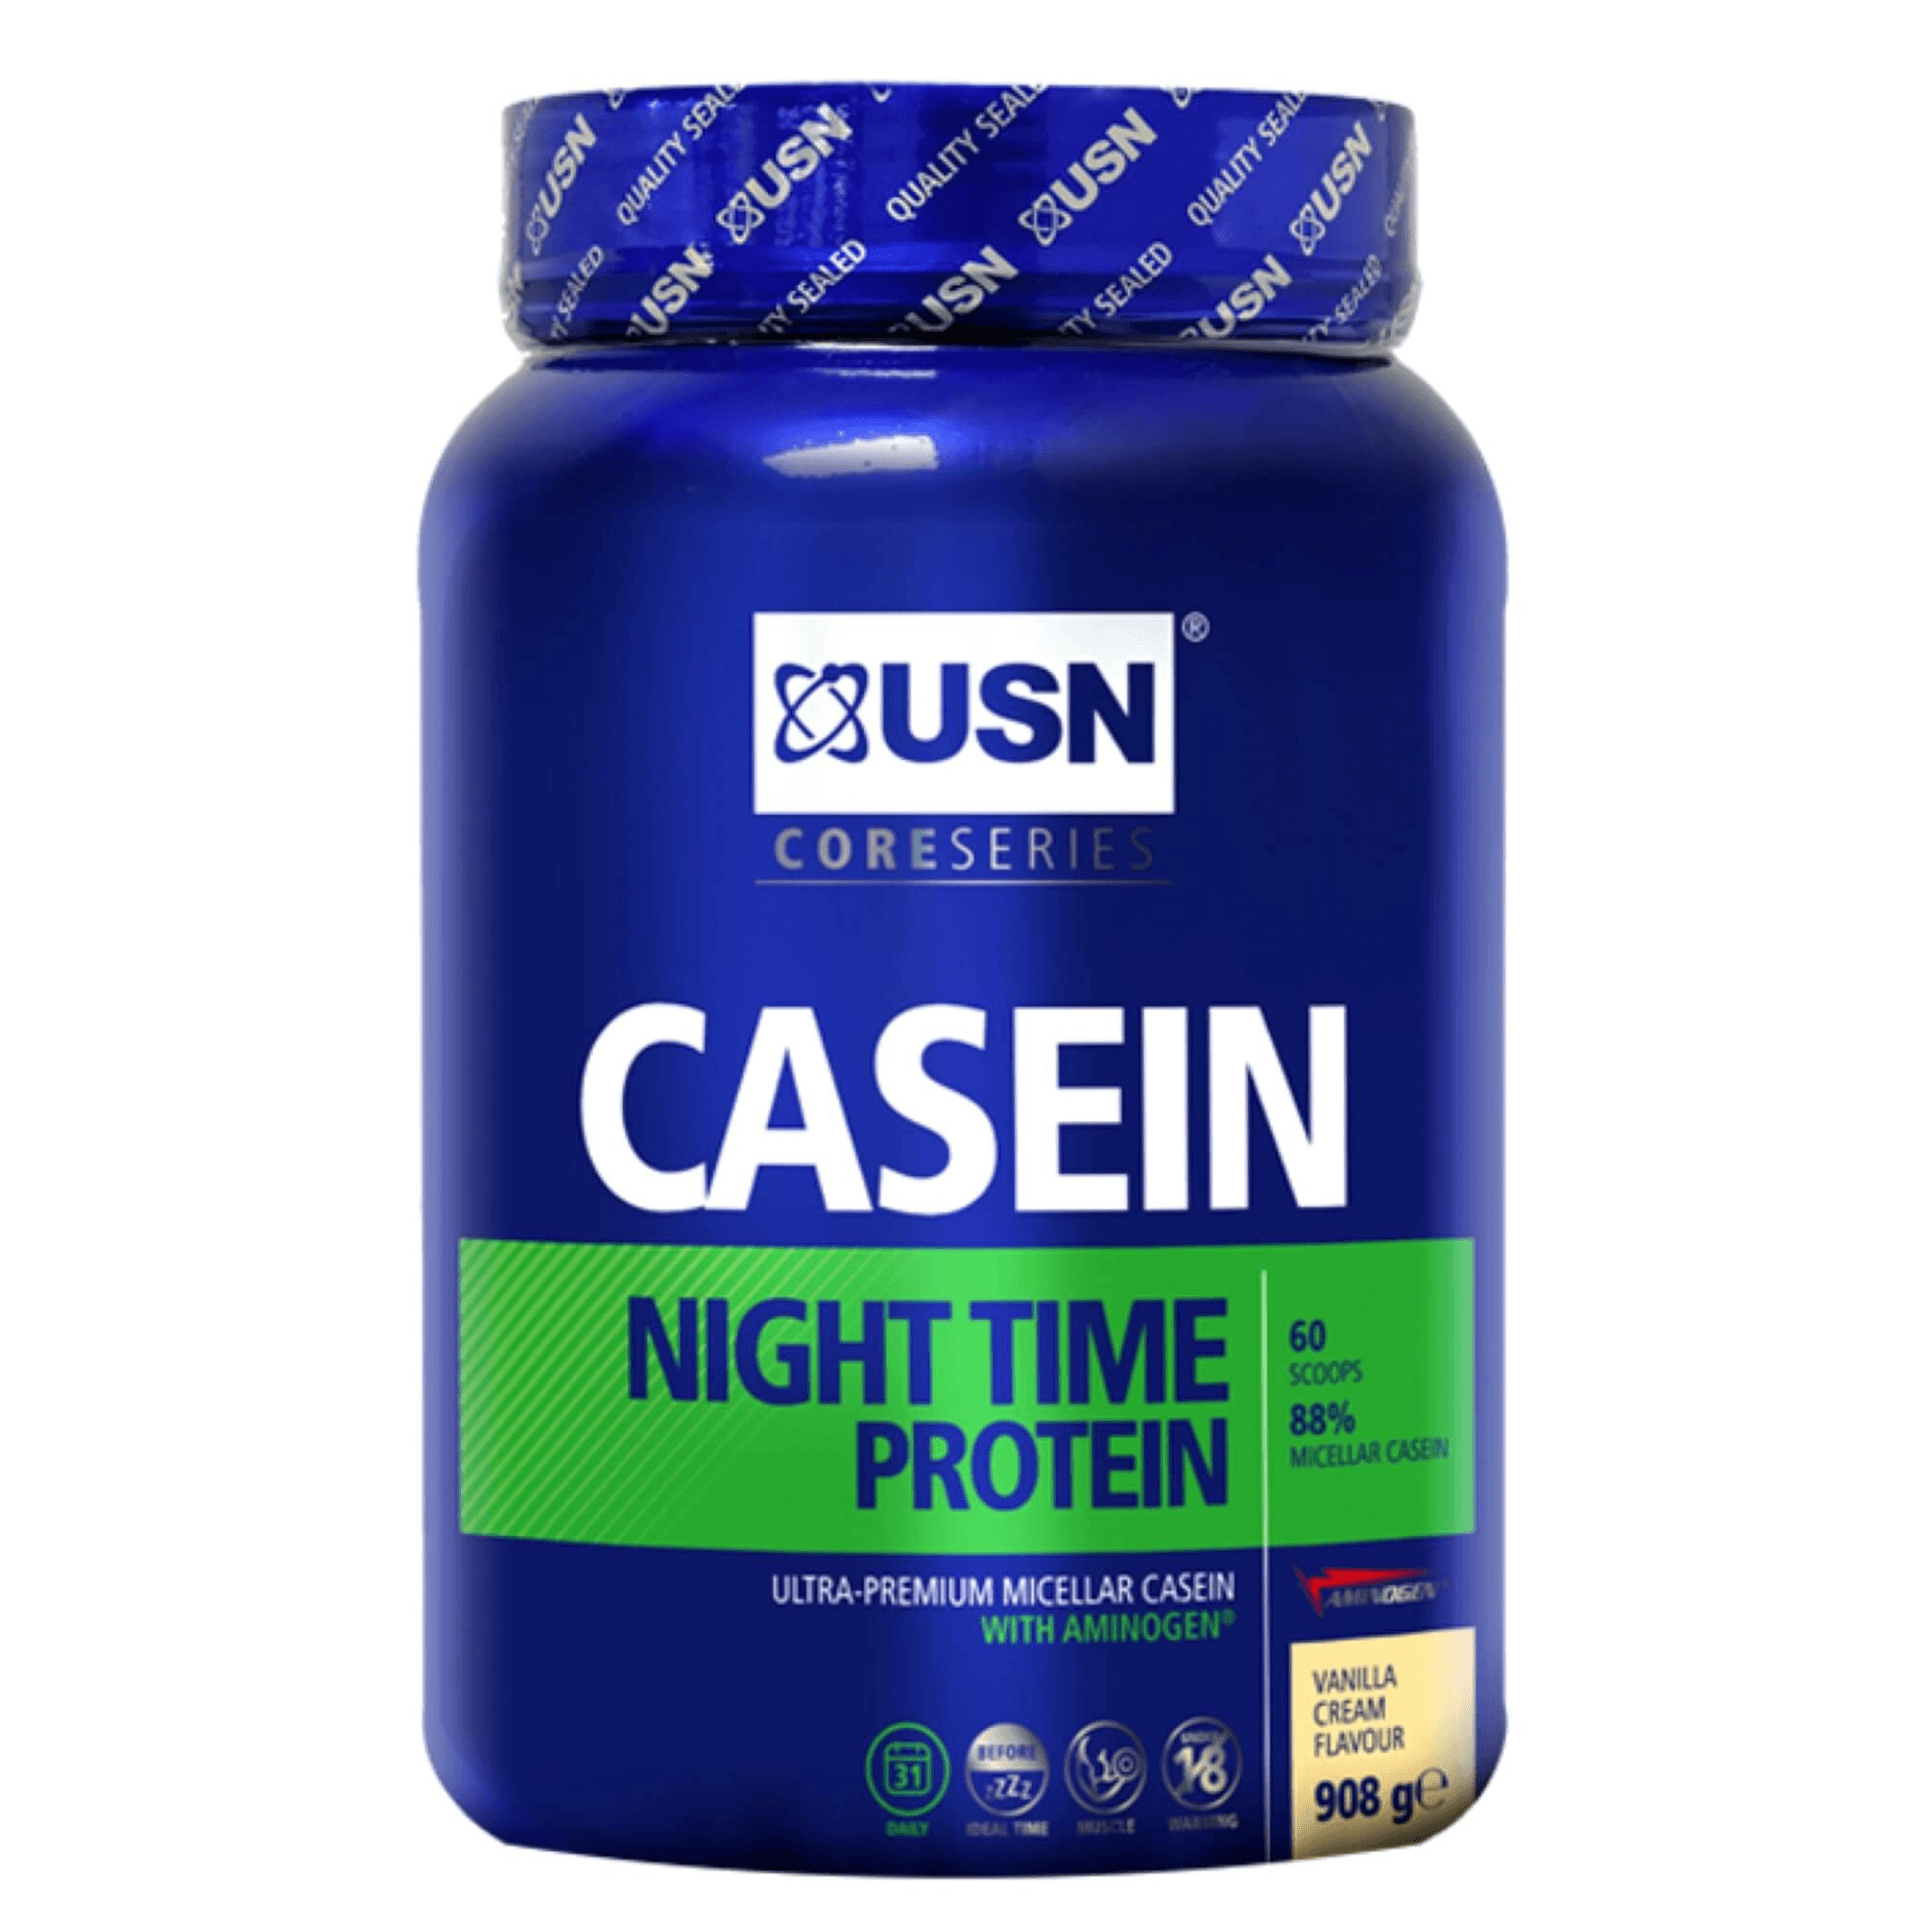 אבקת חלבון קזאין USN בספיגה איטית לבניית שריר יעילה במיוחד